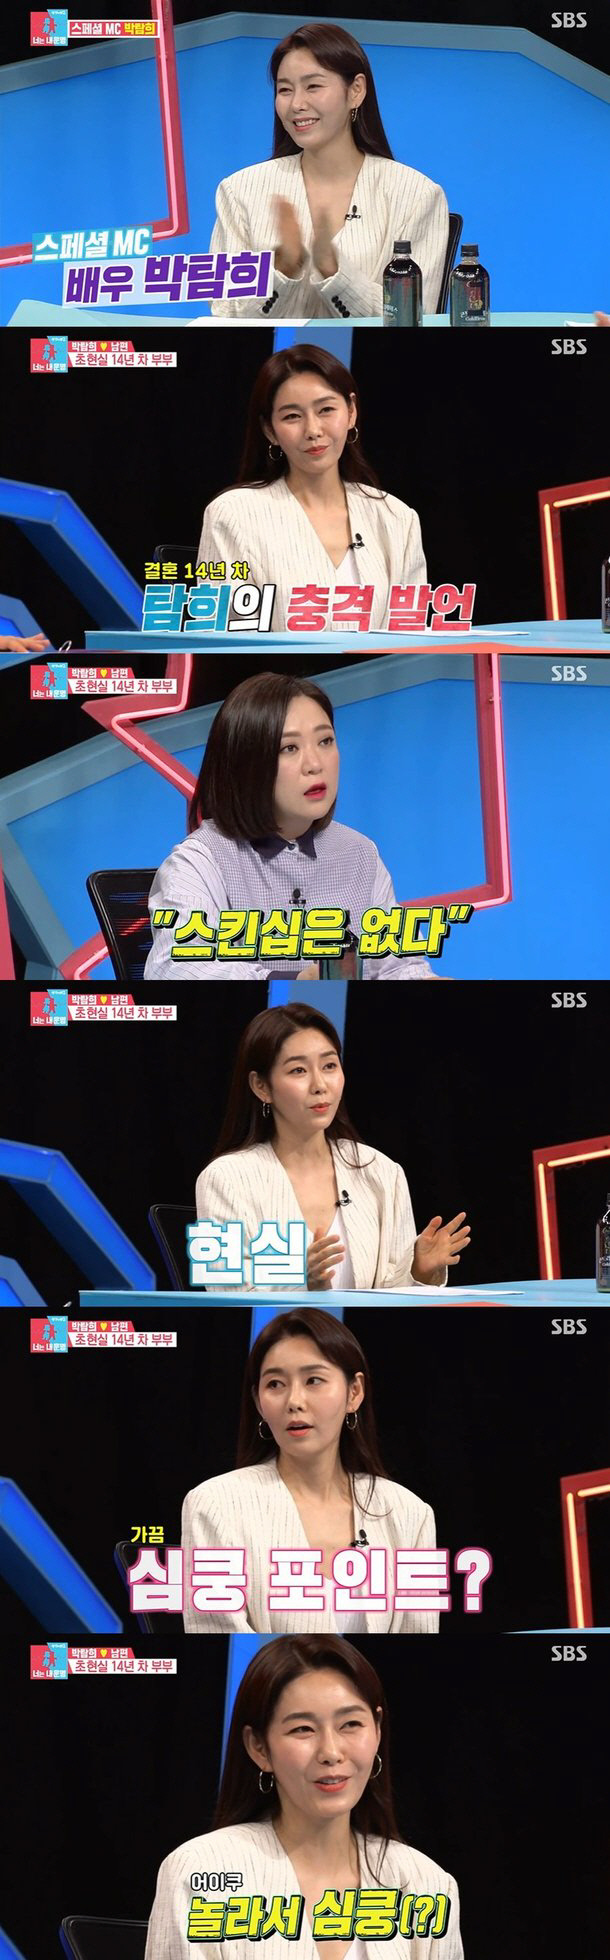 SBS 예능프로그램 ‘동상이몽2‘에 출연한 박탐희. 방송화면 캡처